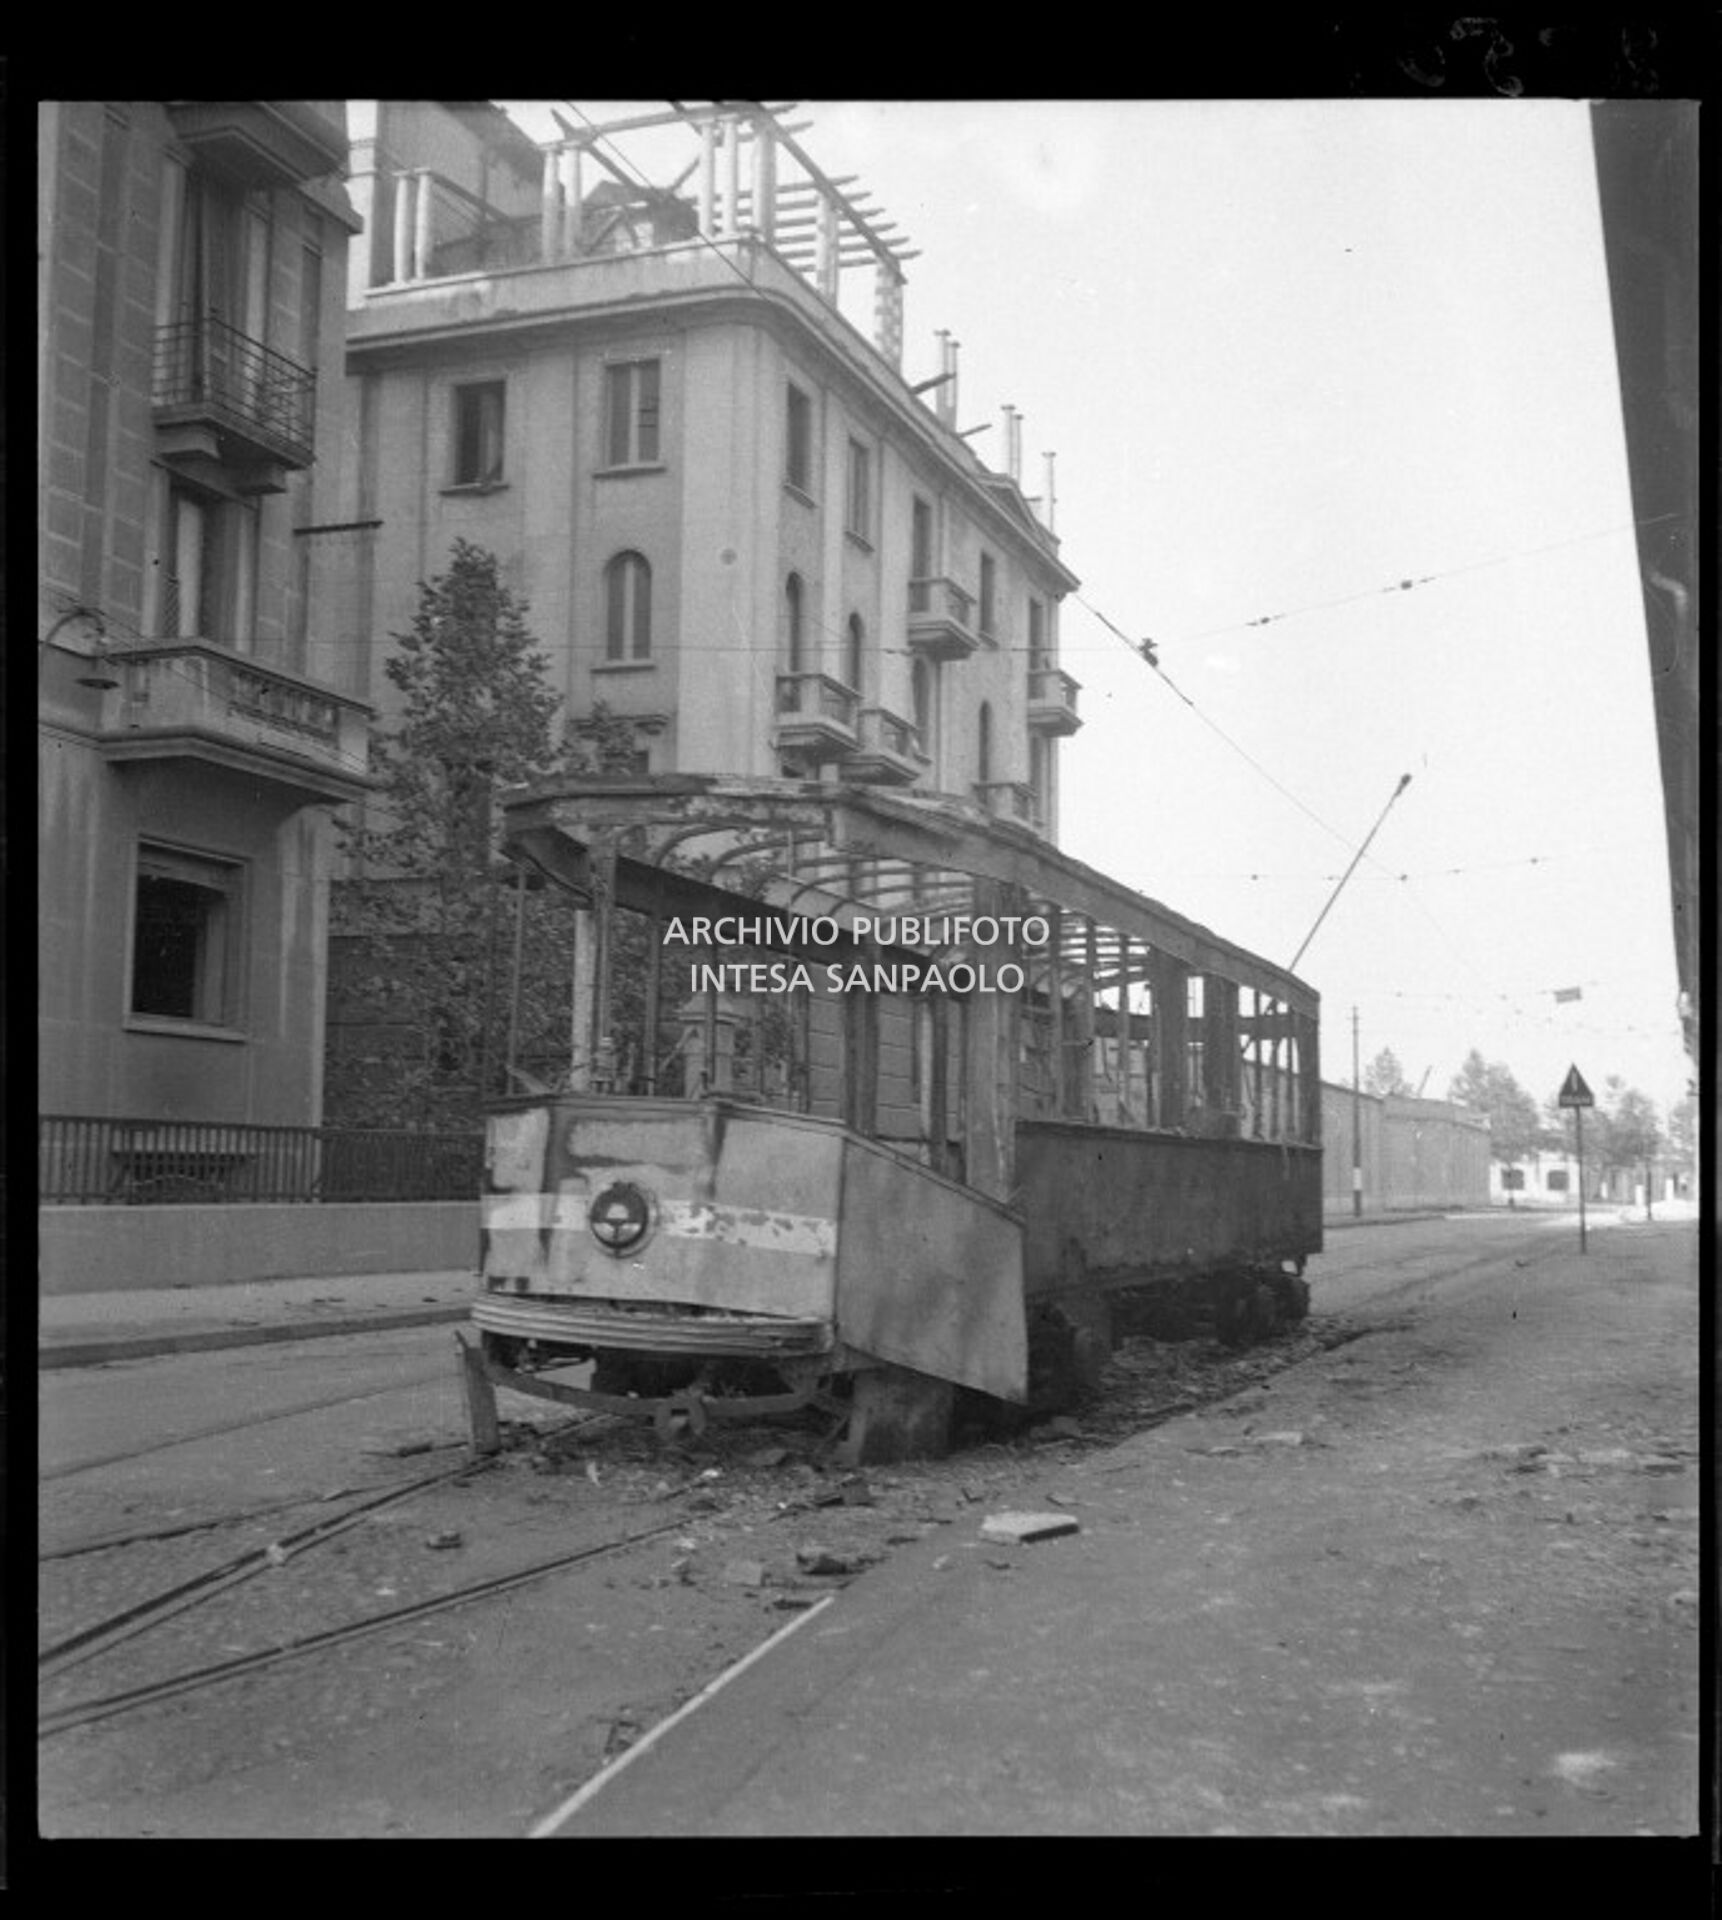 La carcassa di un tram tipo 1928 bruciato durante i bombardamenti di Milano